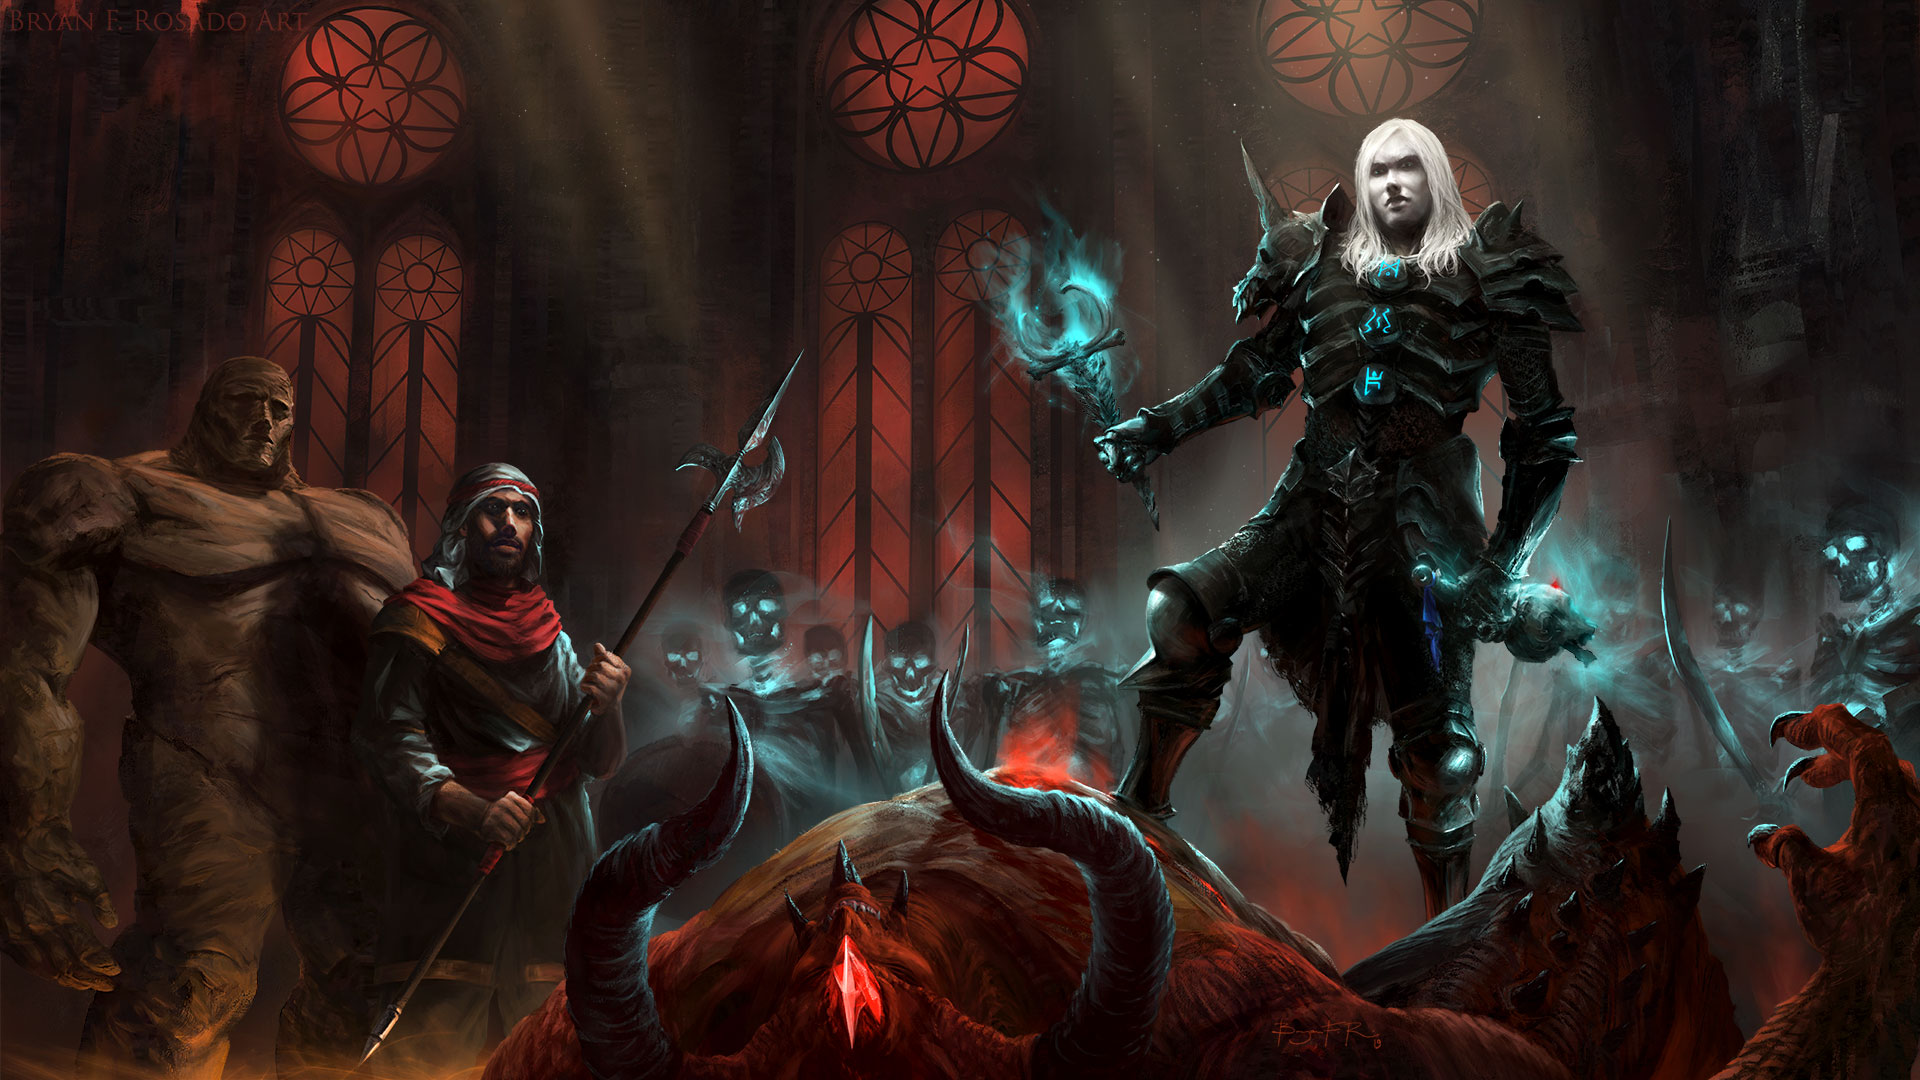 Diablo II Necromancer fan art by BryanFRosadoArt